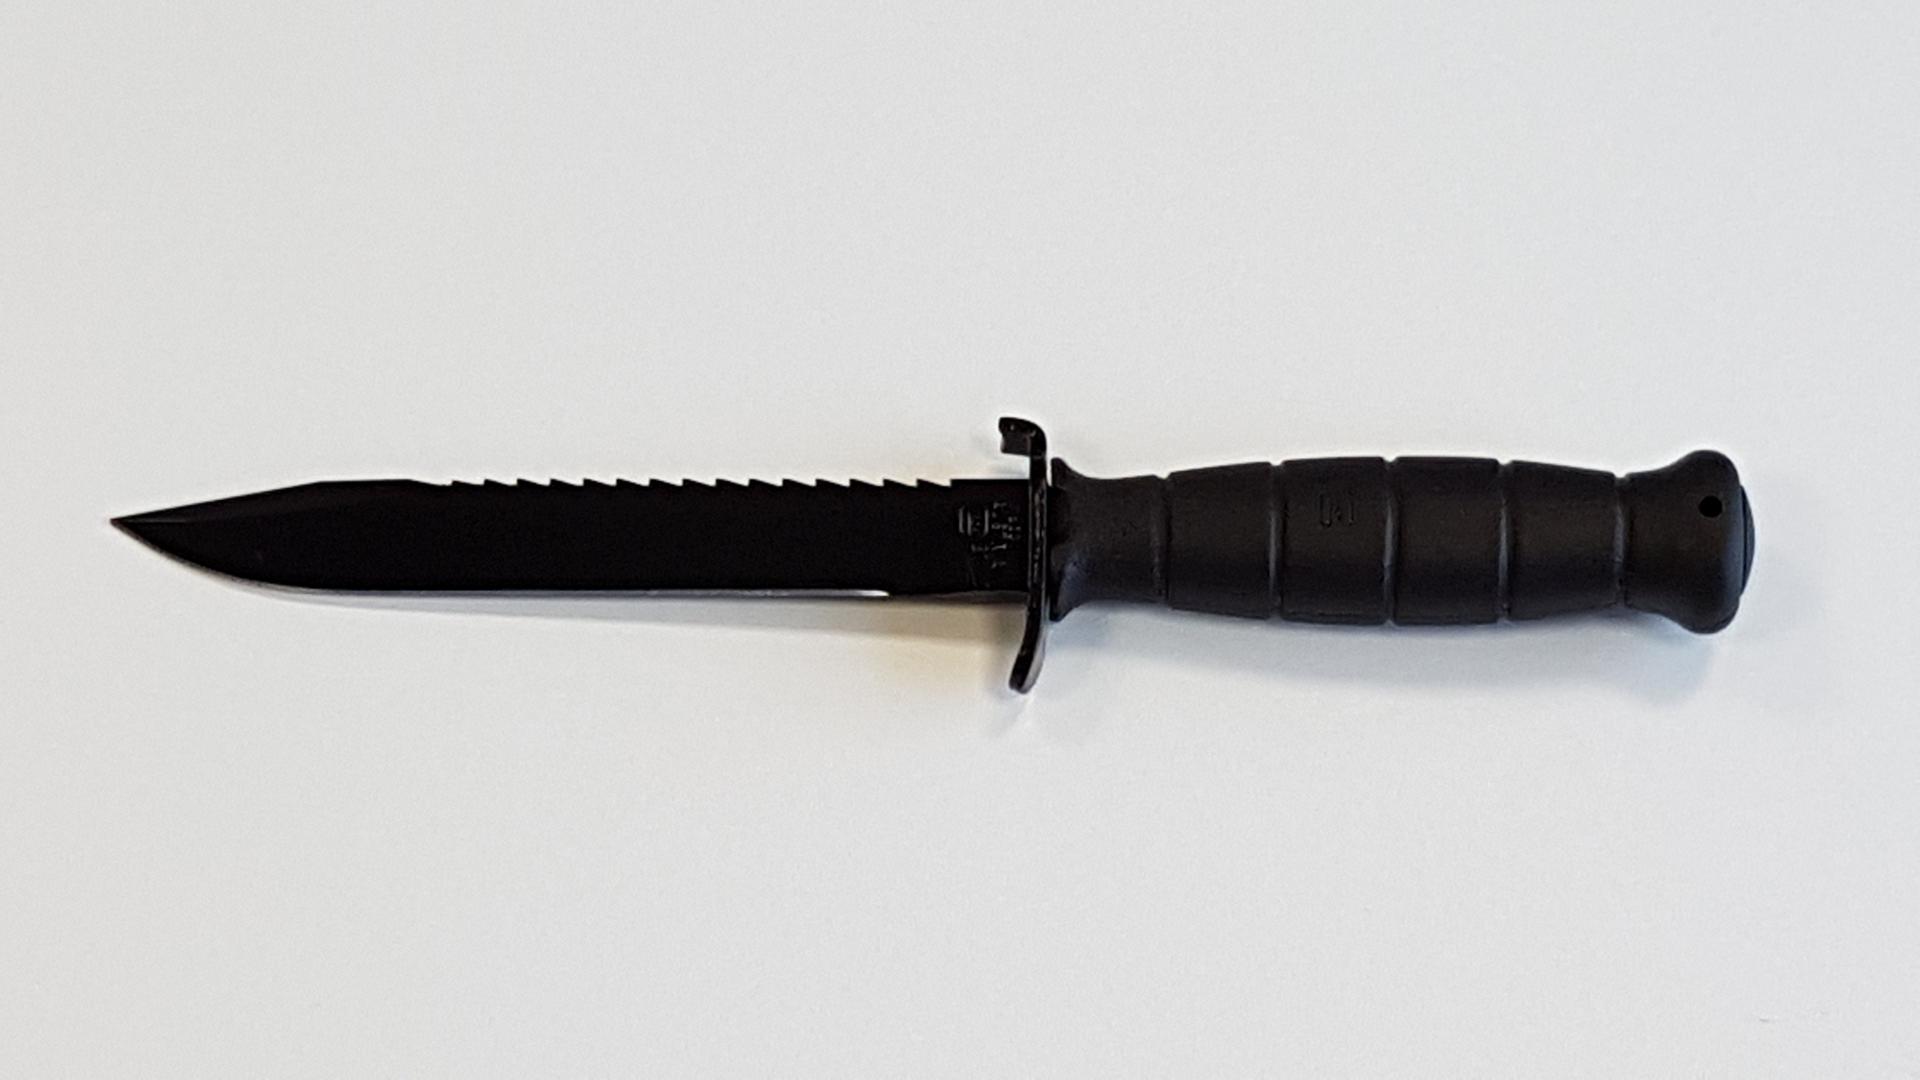 Couteau Glock lame scie : long lame 16.3 cm / totale 29 cm